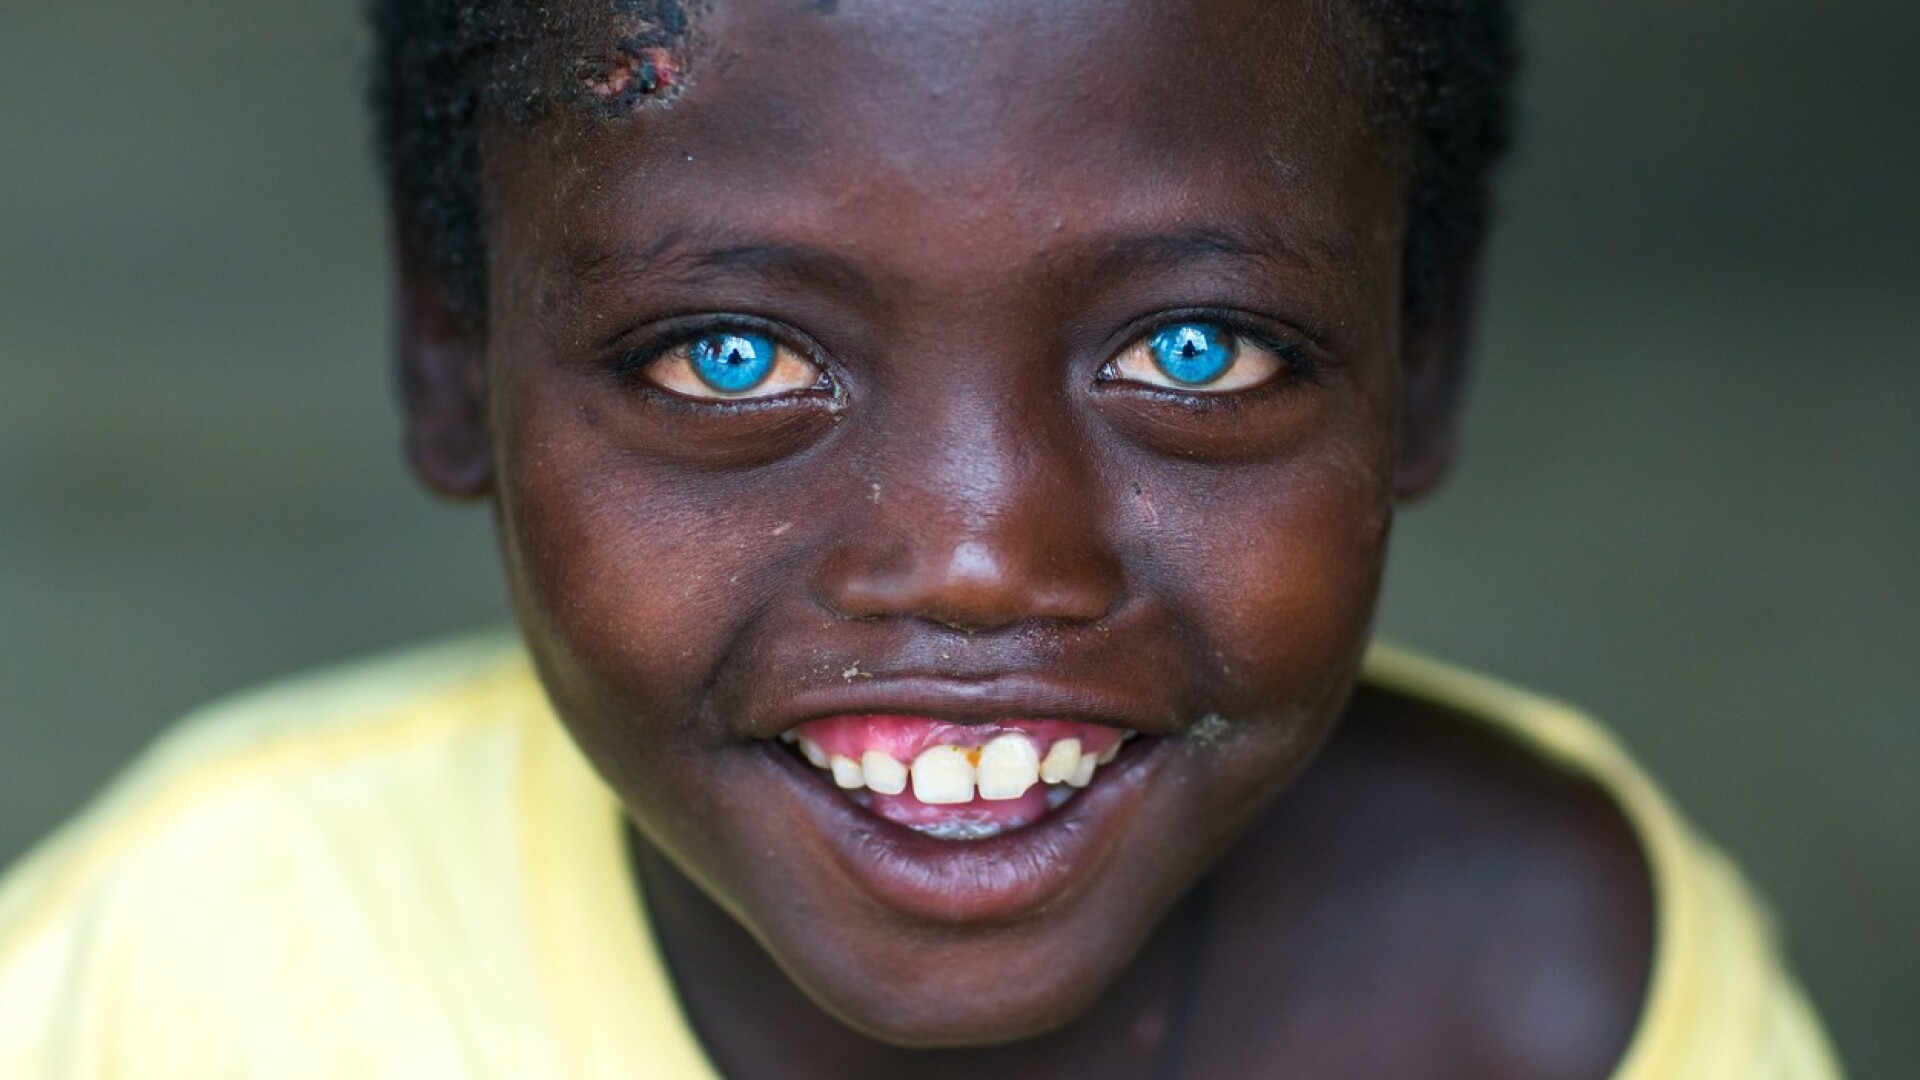 Toți membrii unui trib din Indonezia au ochii albaștri. Care este explicația